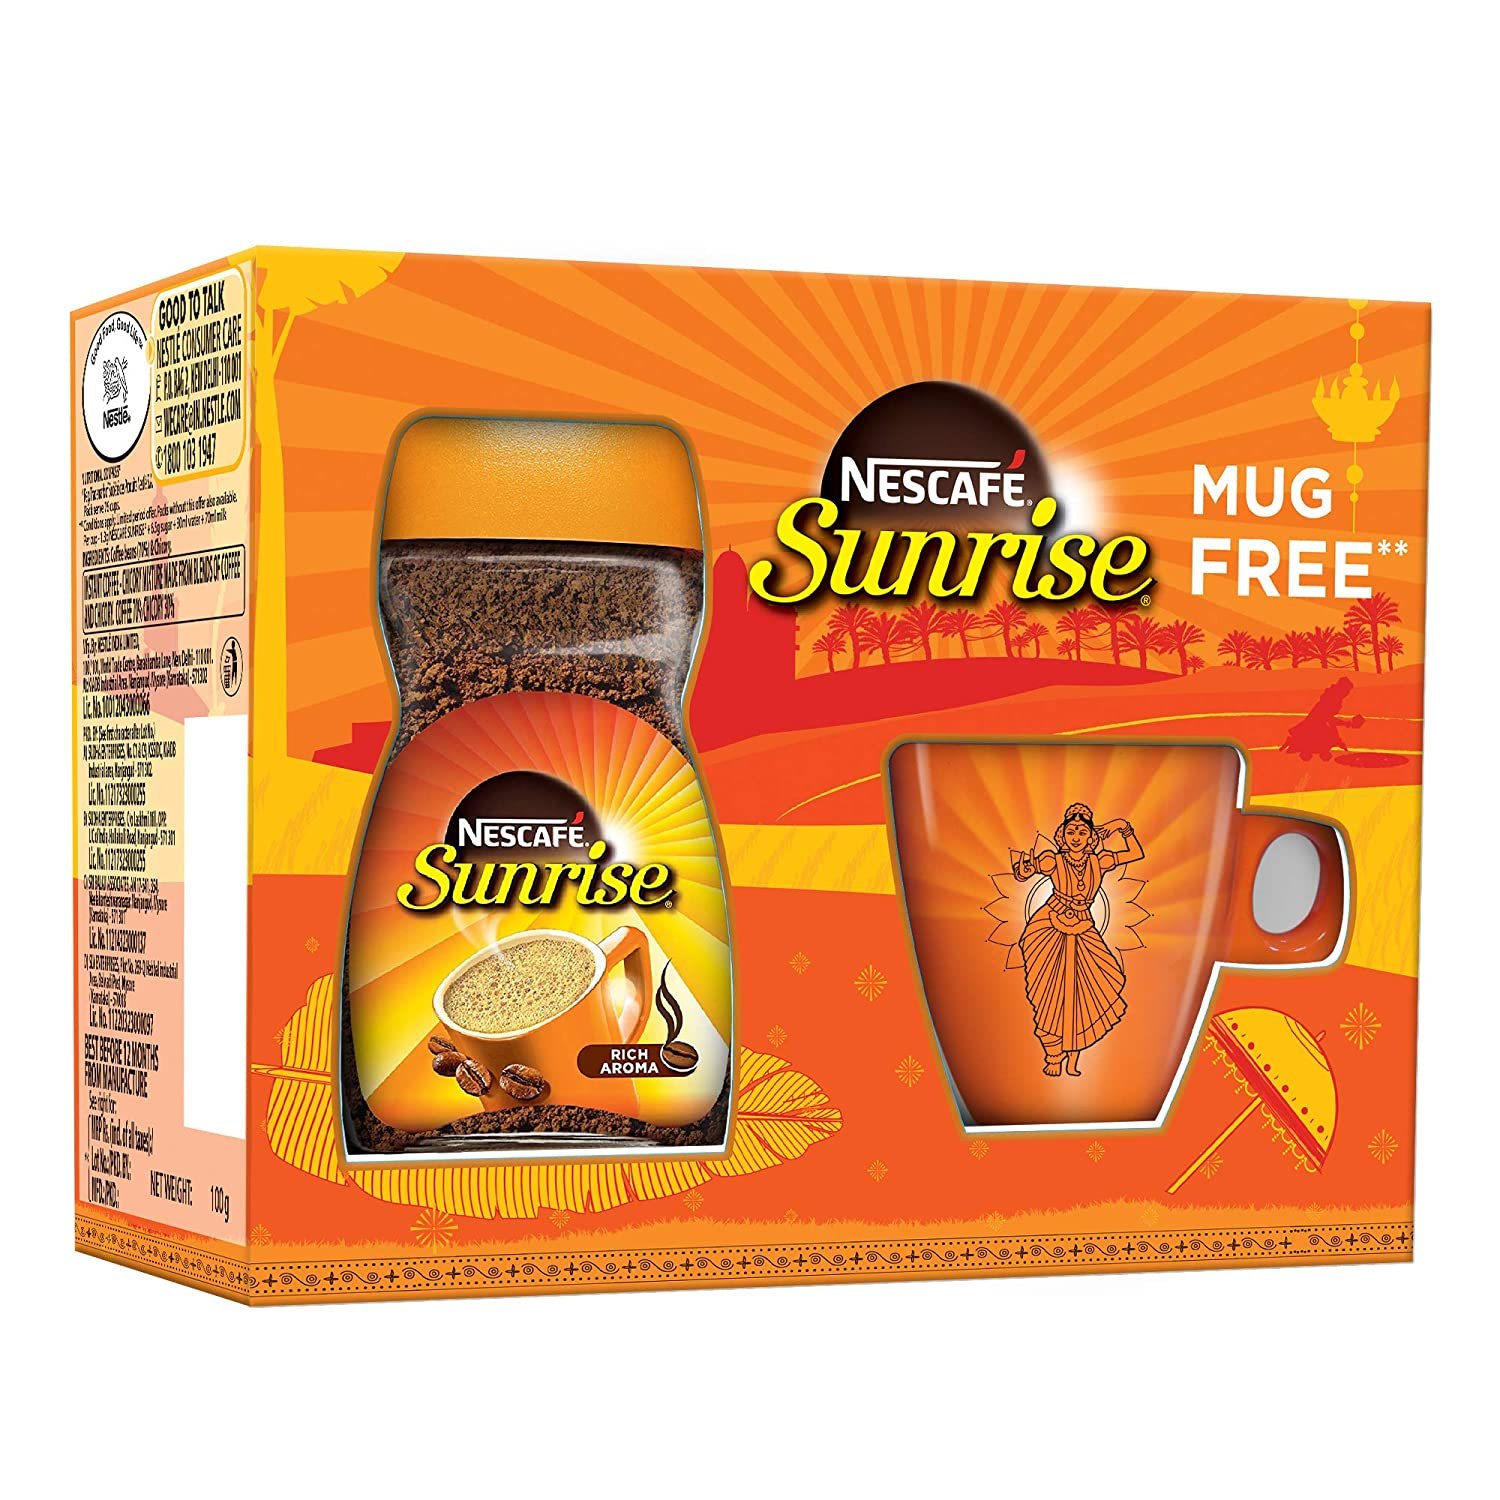 Nescafe Sunrise - 100g (Free Mug)